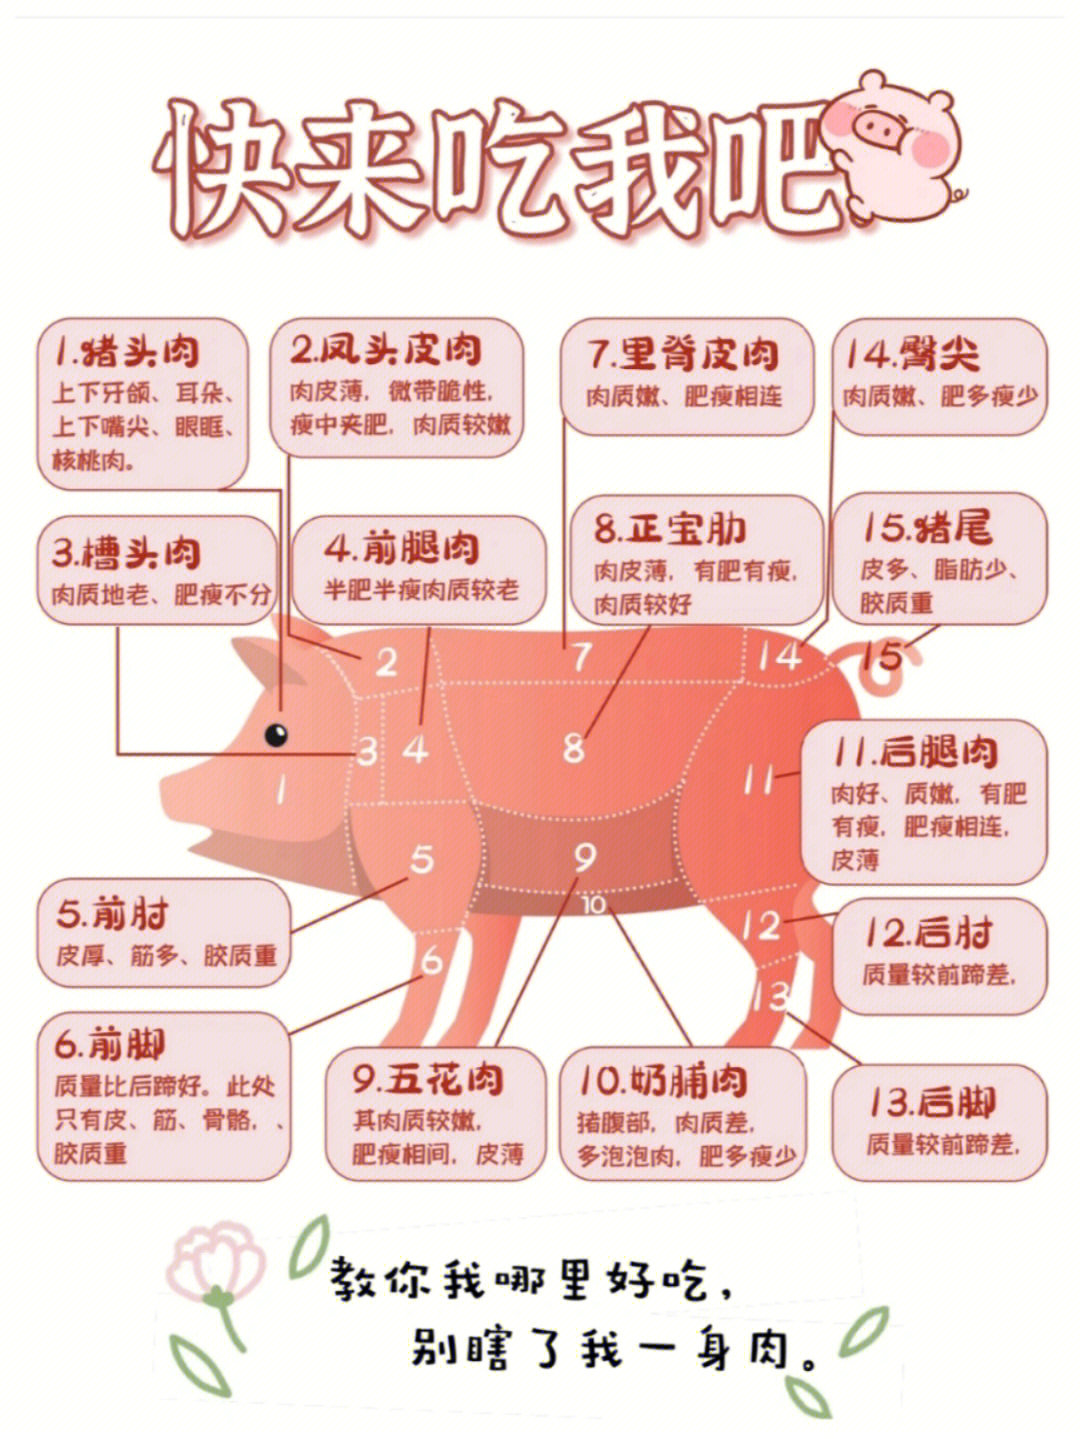 一张图教你如何吃猪肉